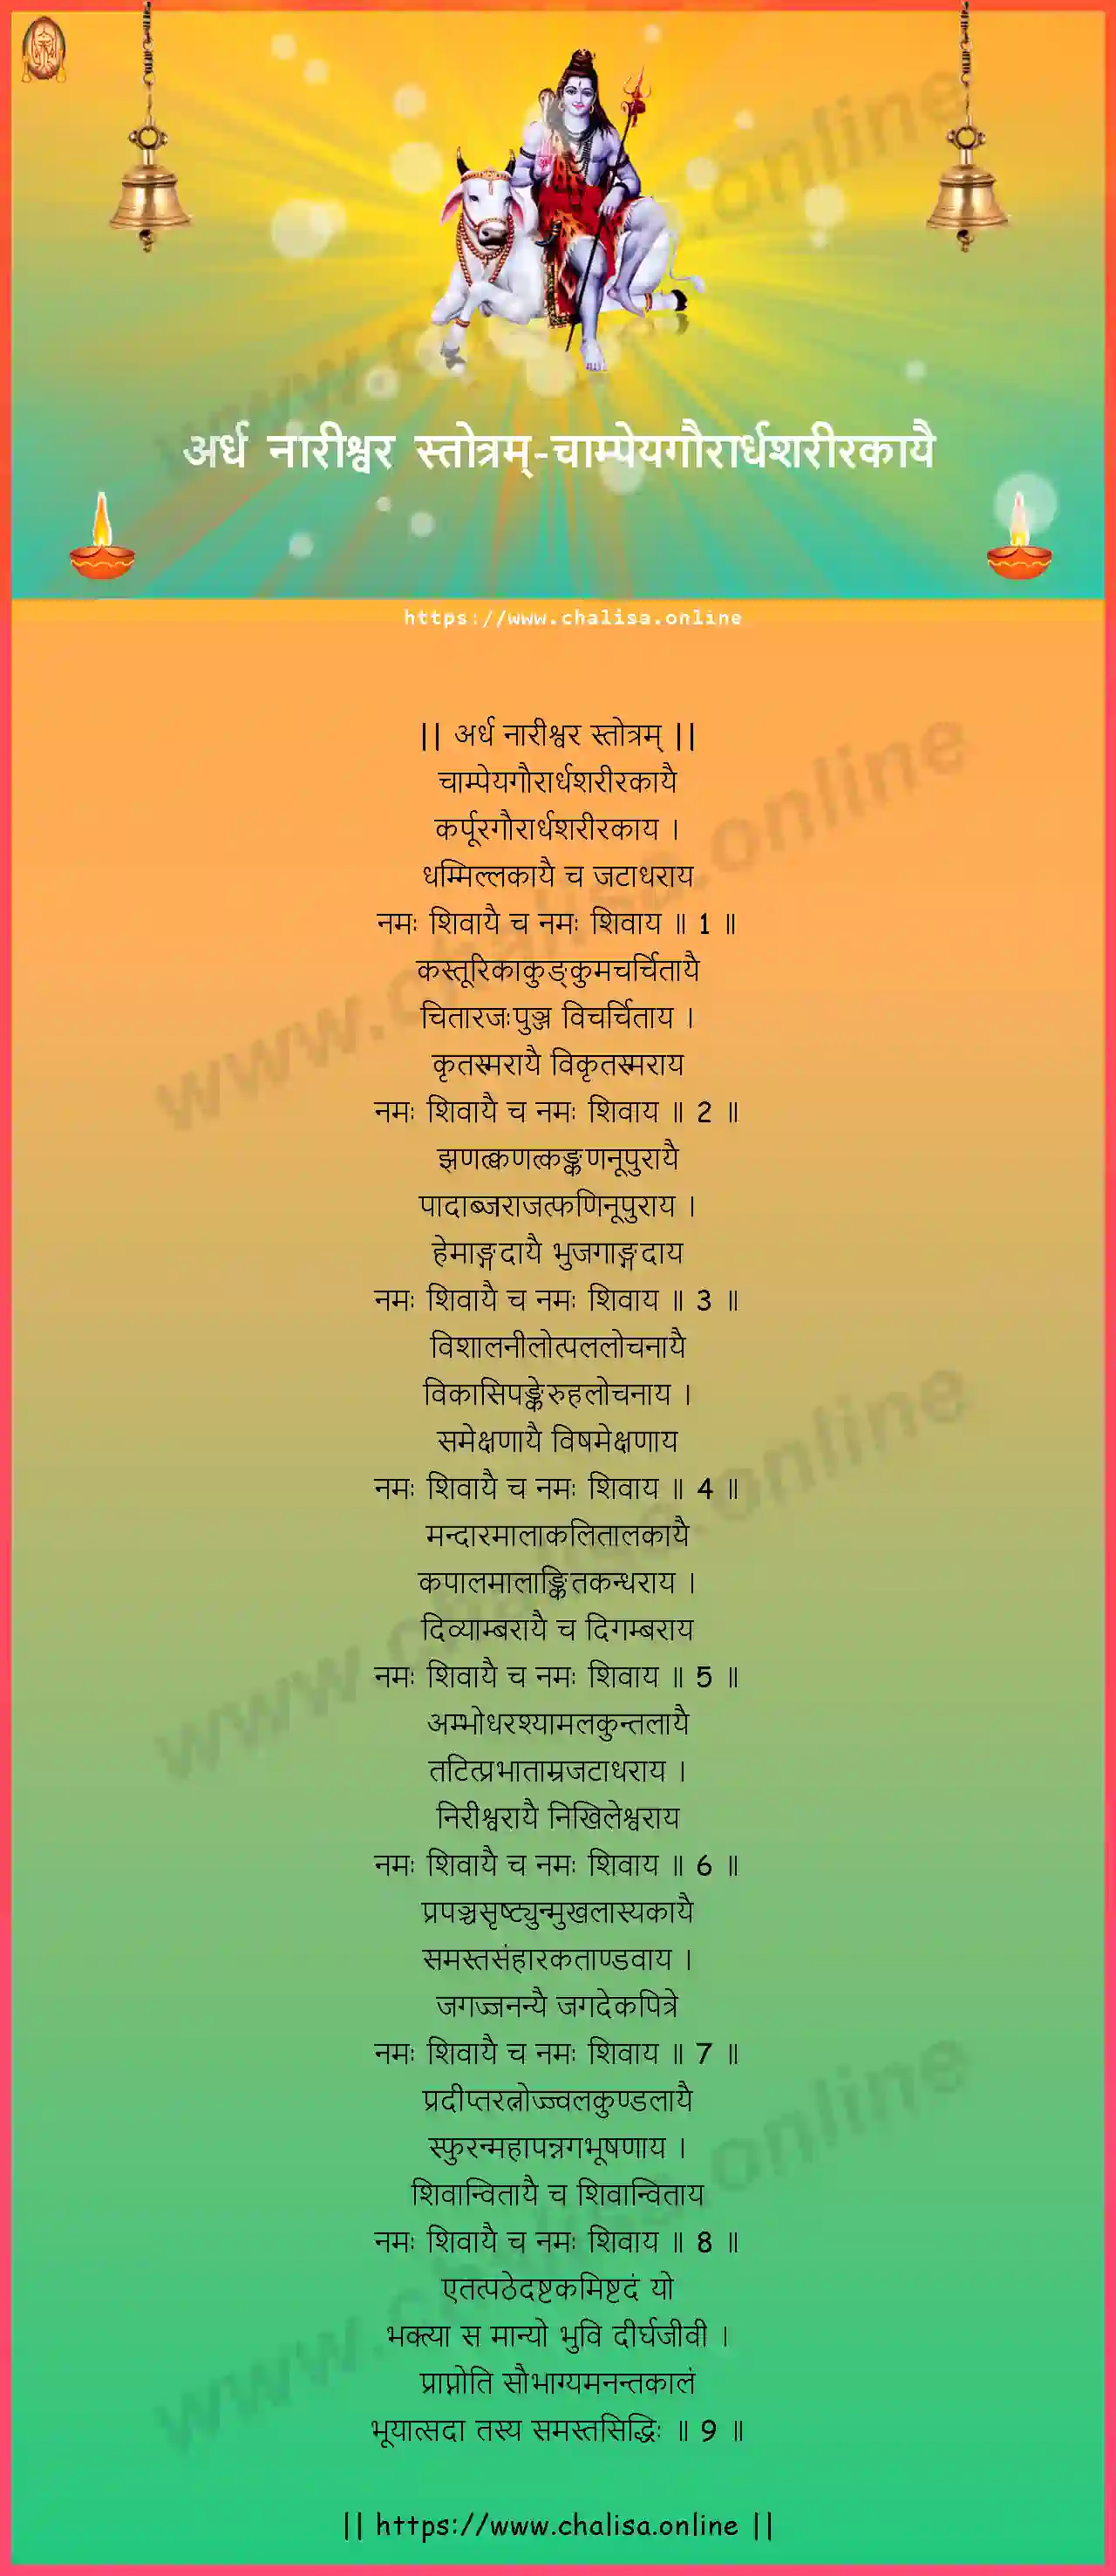 champeyagaurardhasarirakayai-ardha-nareeswara-stotram-sanskrit-sanskrit-lyrics-download